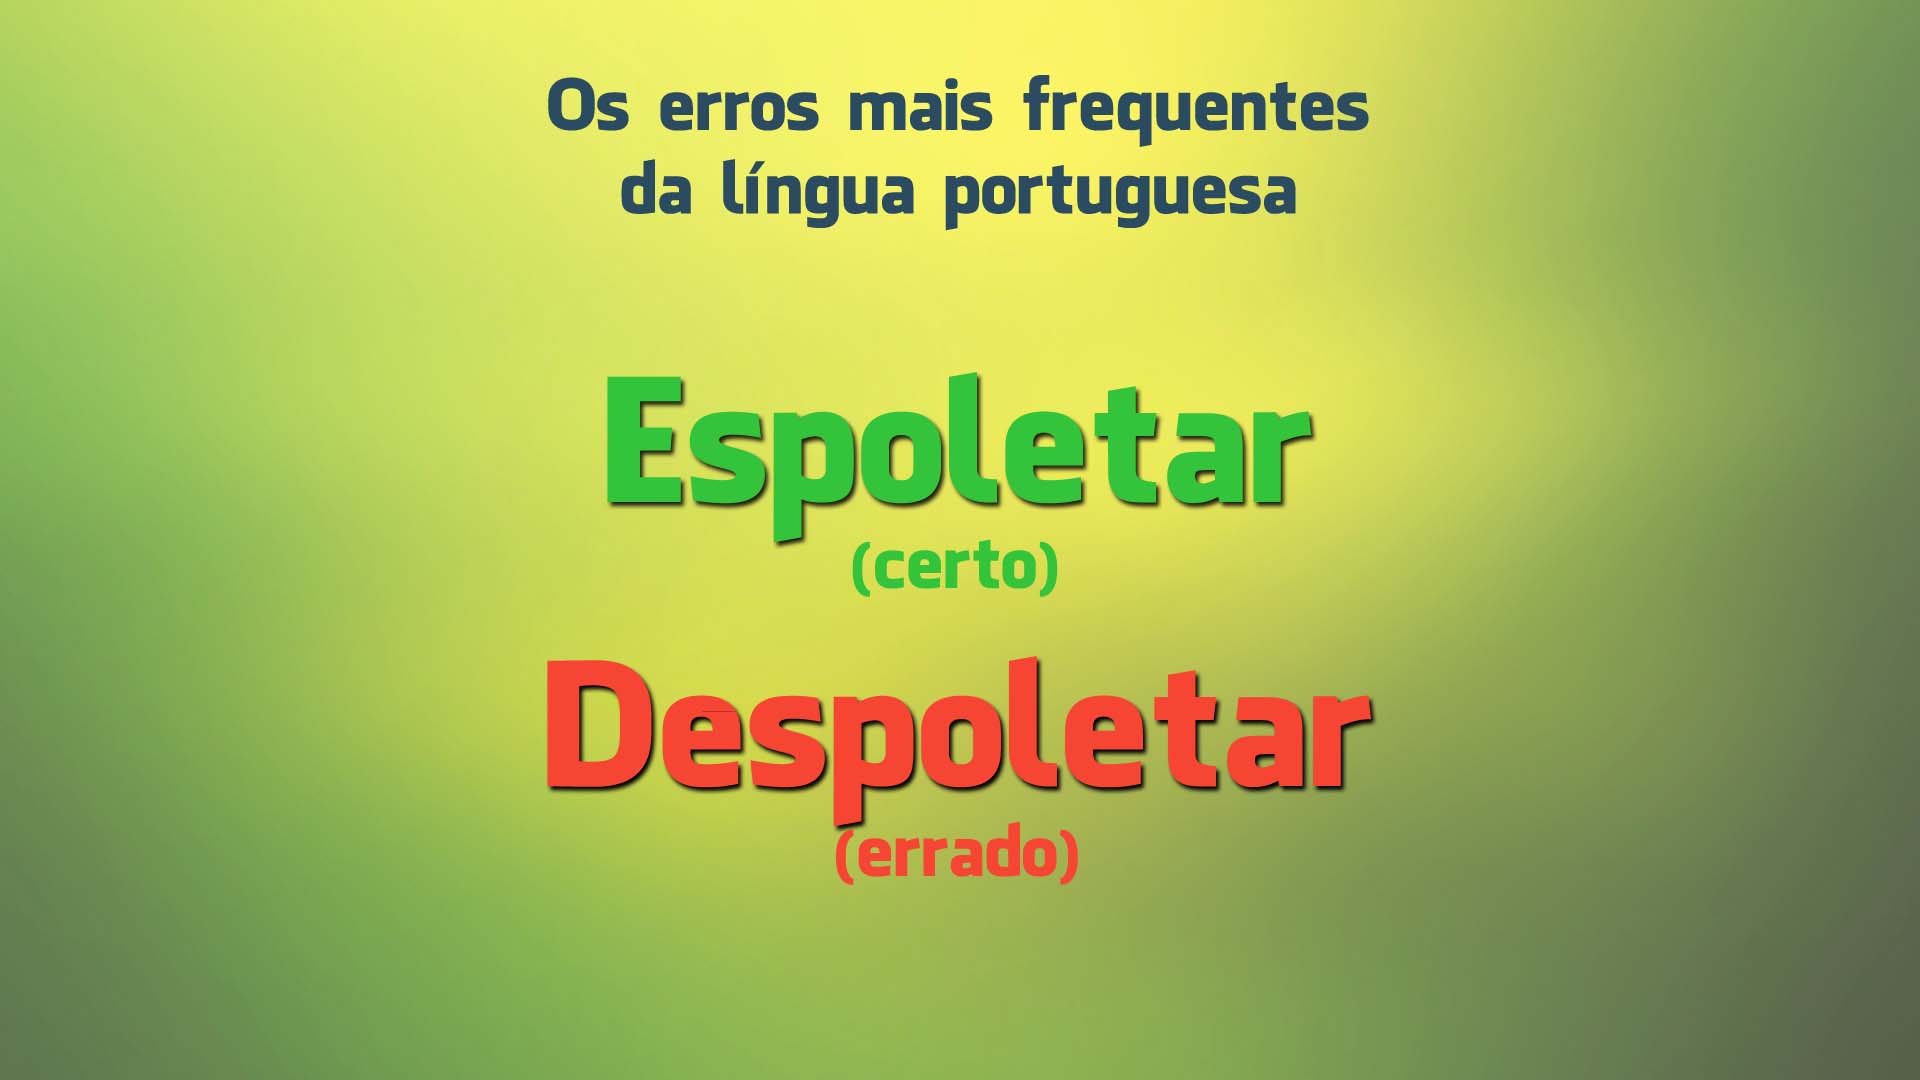 Os 15 erros mais frequentes da língua portuguesa